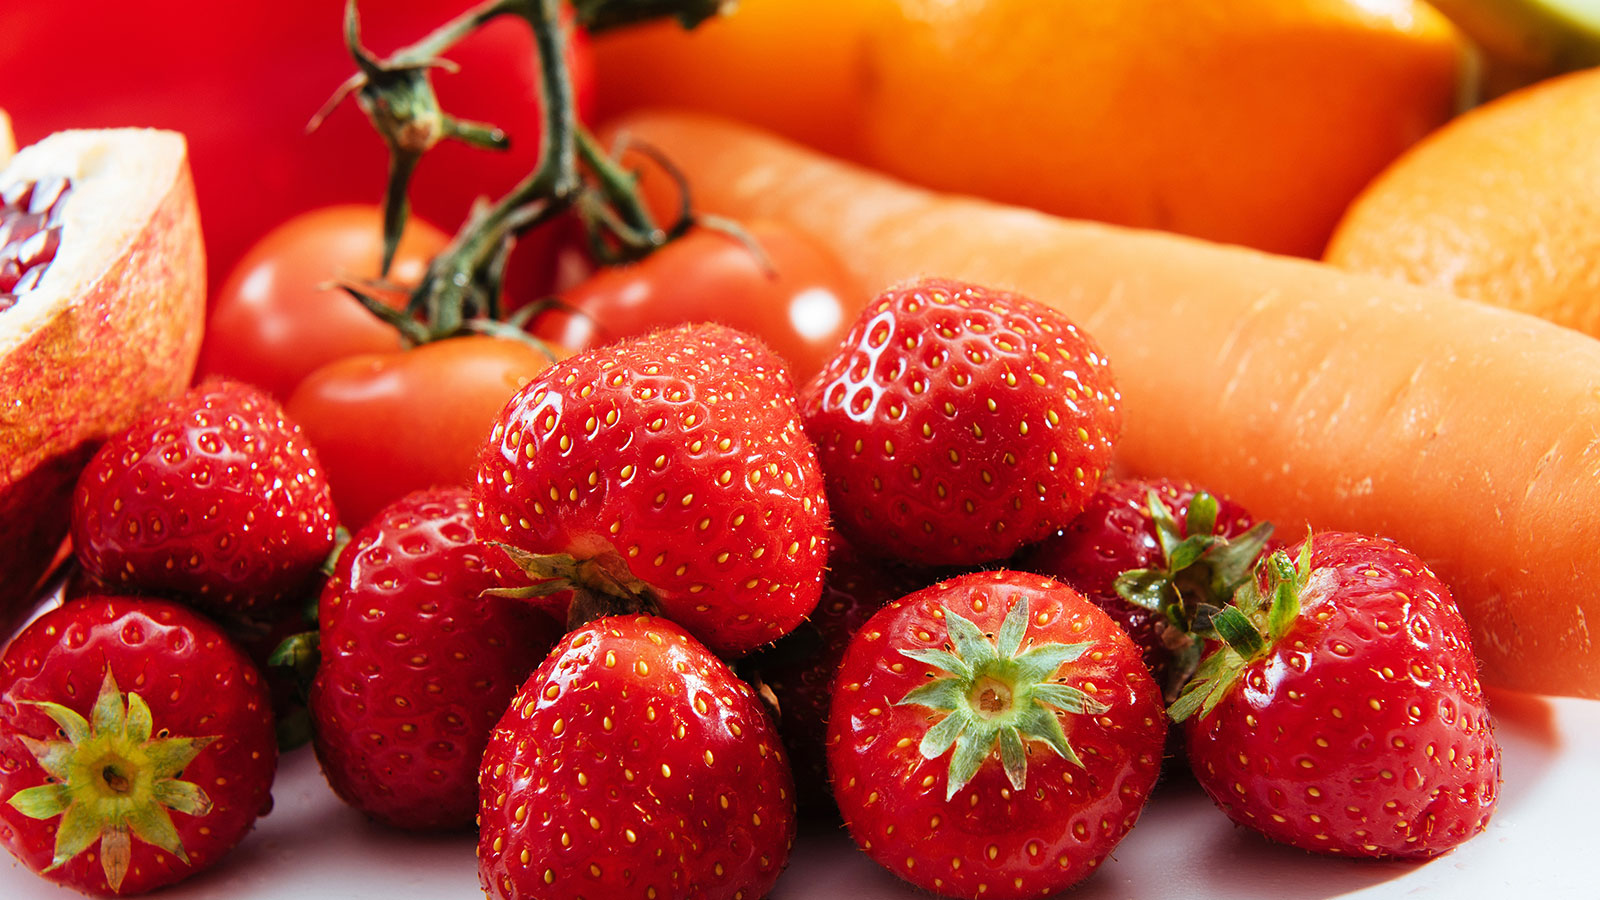 Kan şekerini hızla düşüren sebze ve meyveler